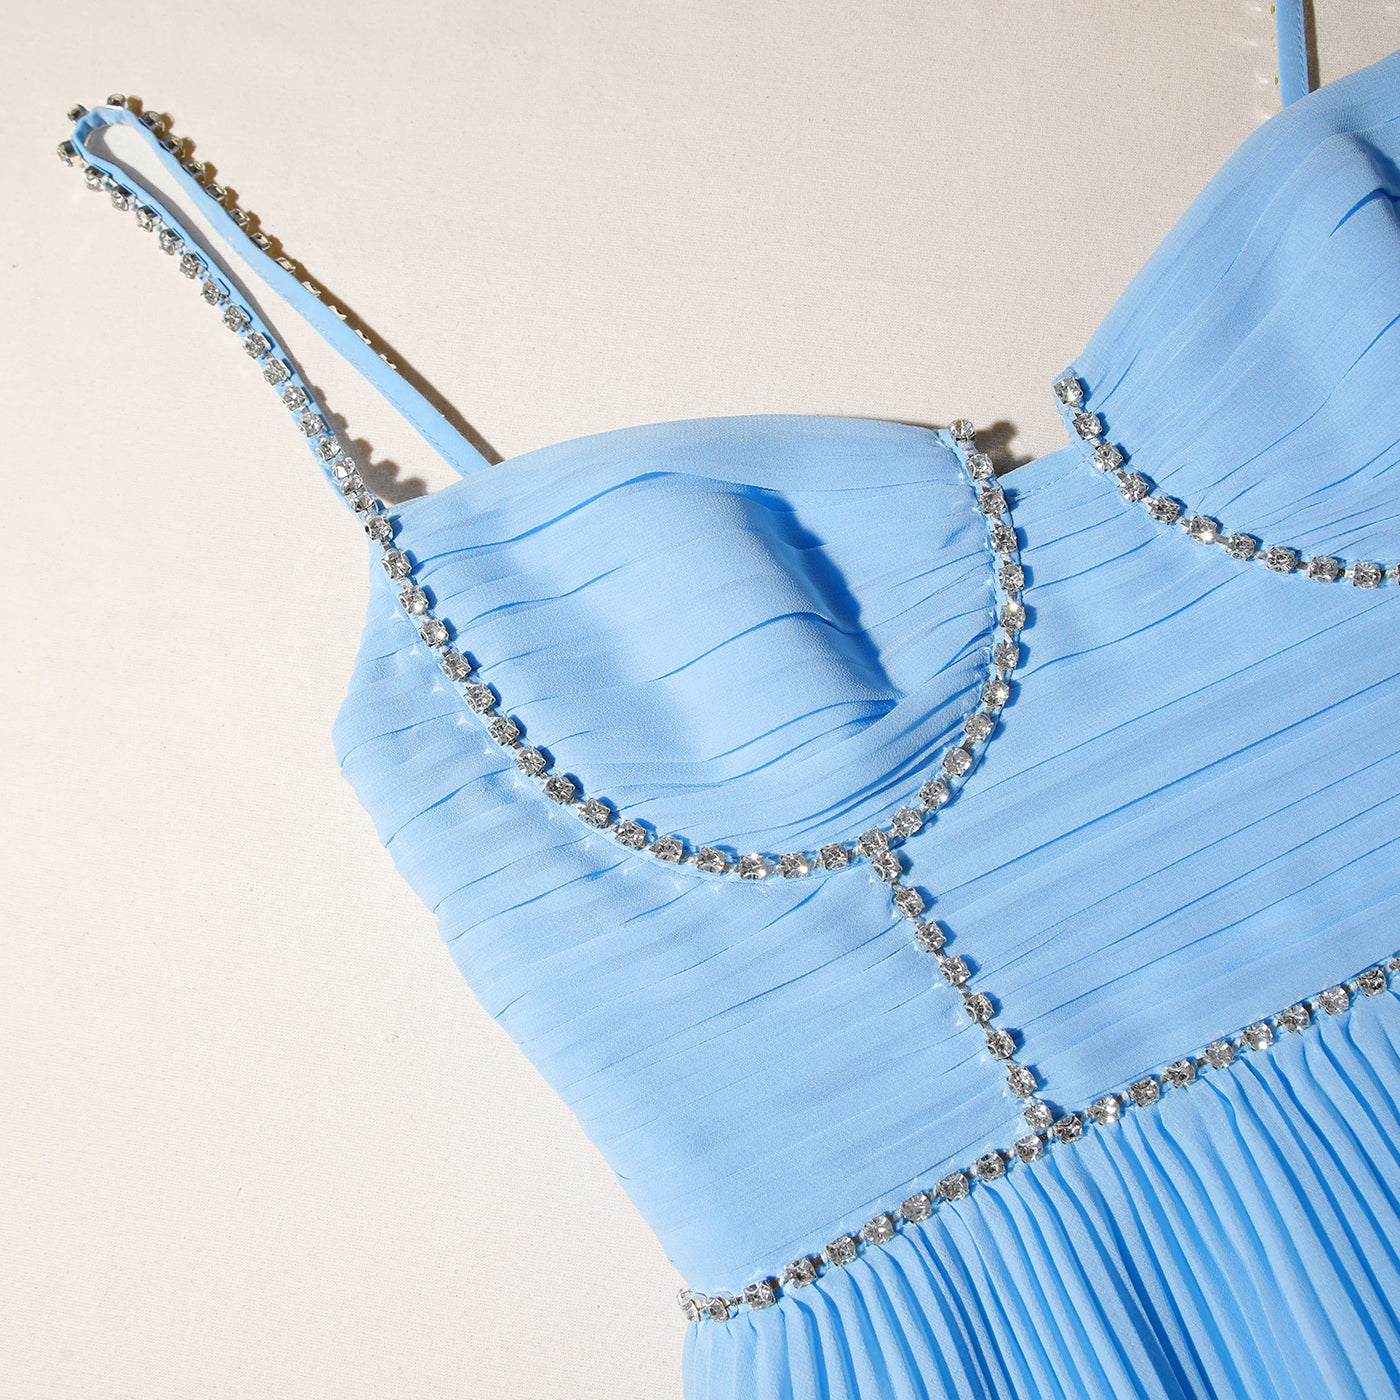 Blue Chiffon Tiered Midi Dress